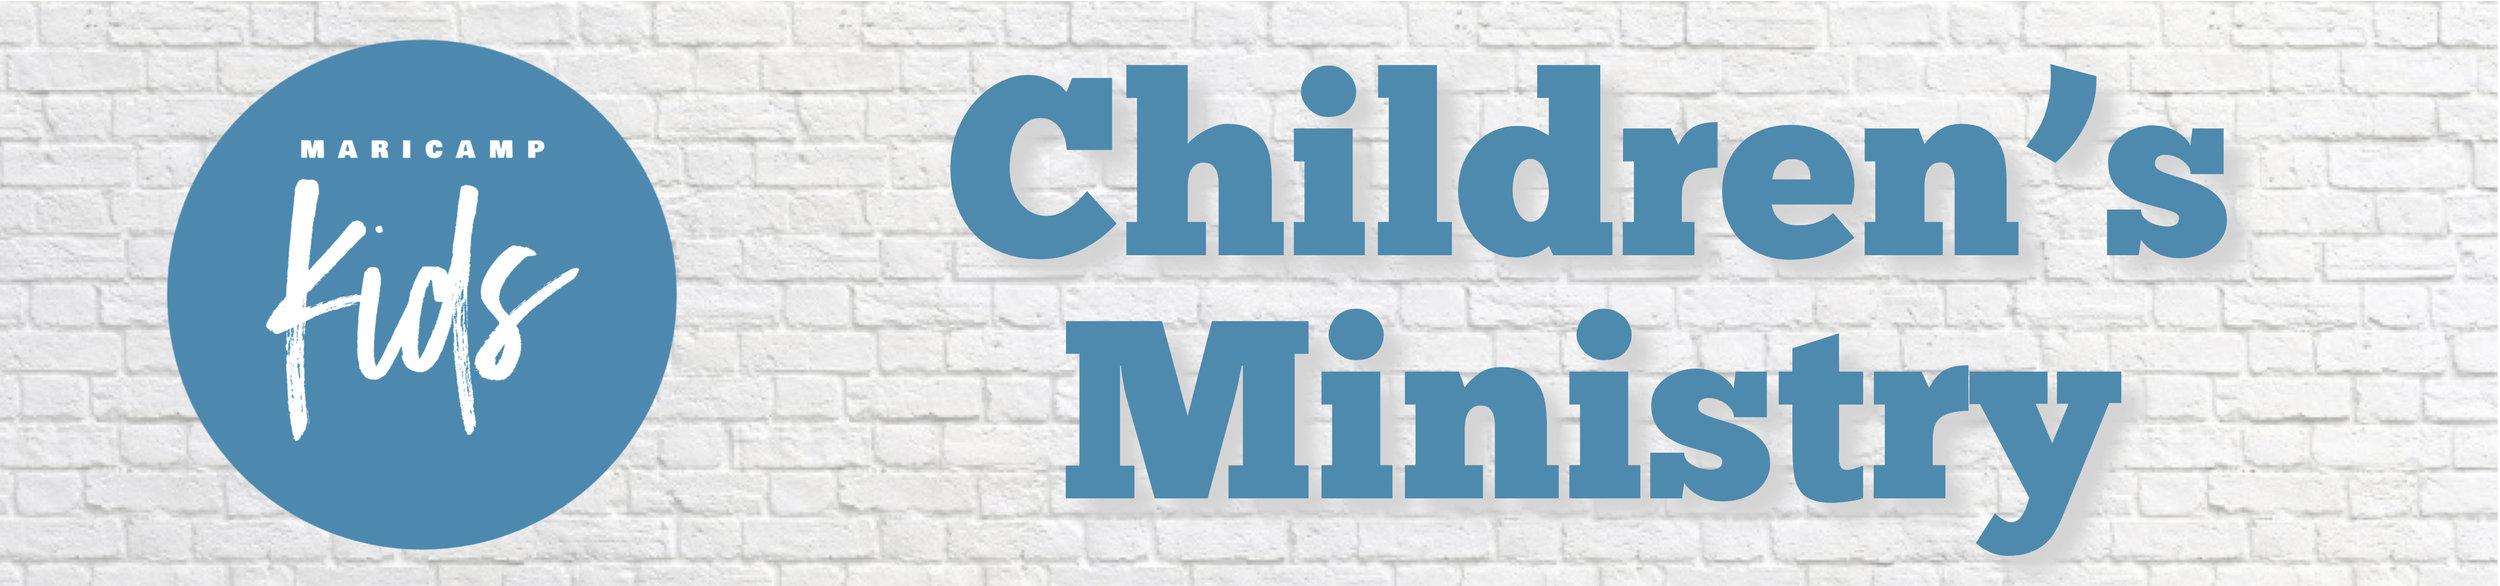 Childrens Ministry Banner JPG.jpg